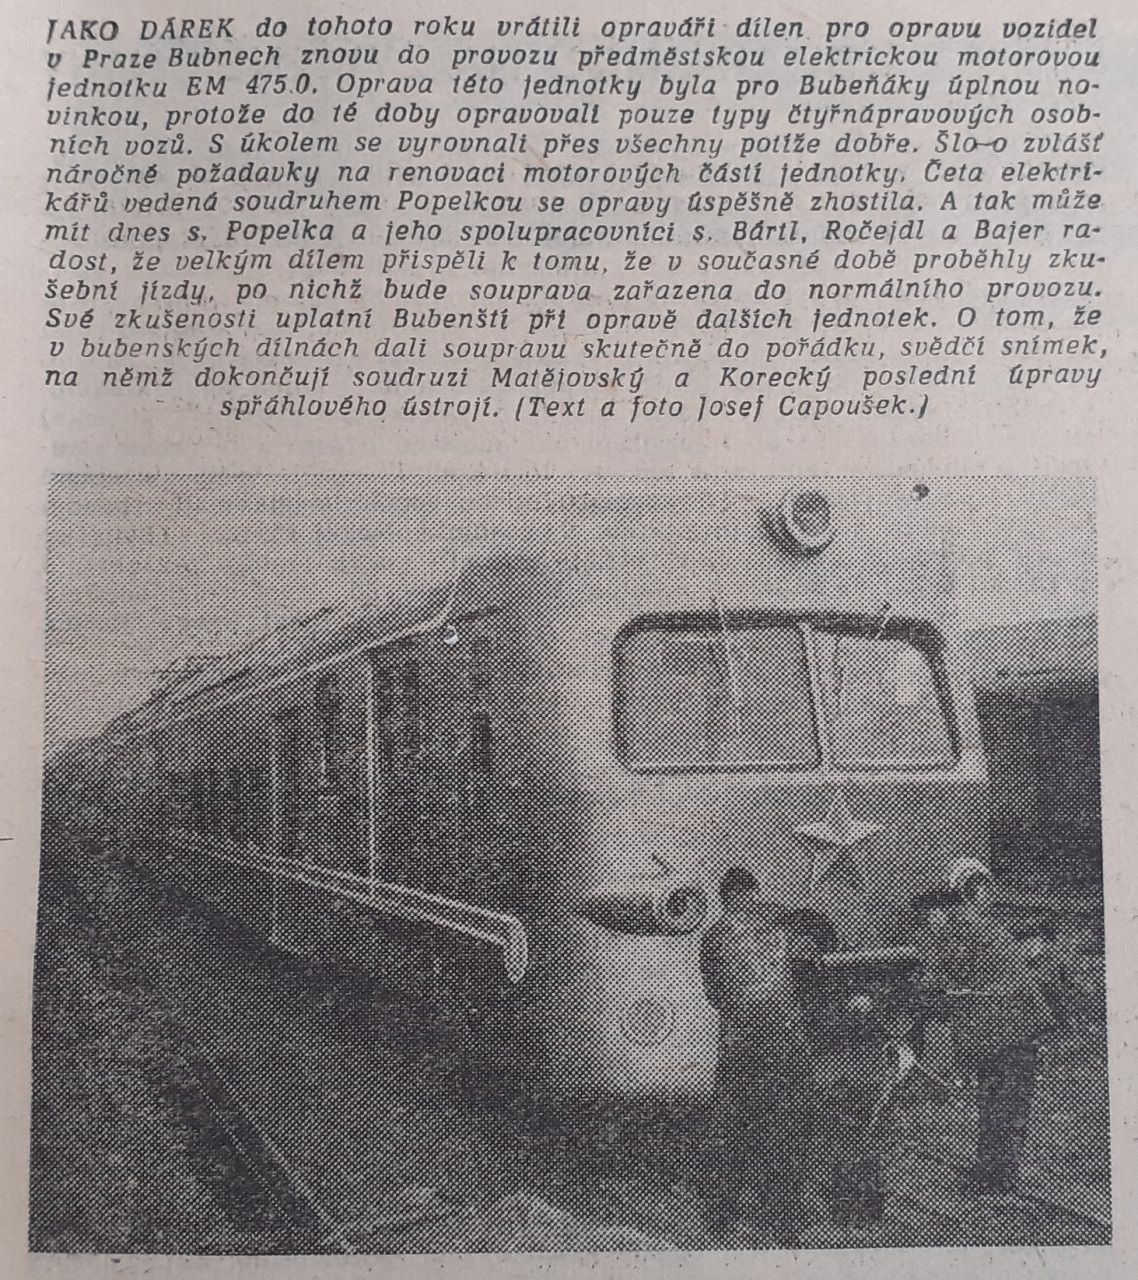 EM475.0 se opravuje - elezni 2/1965